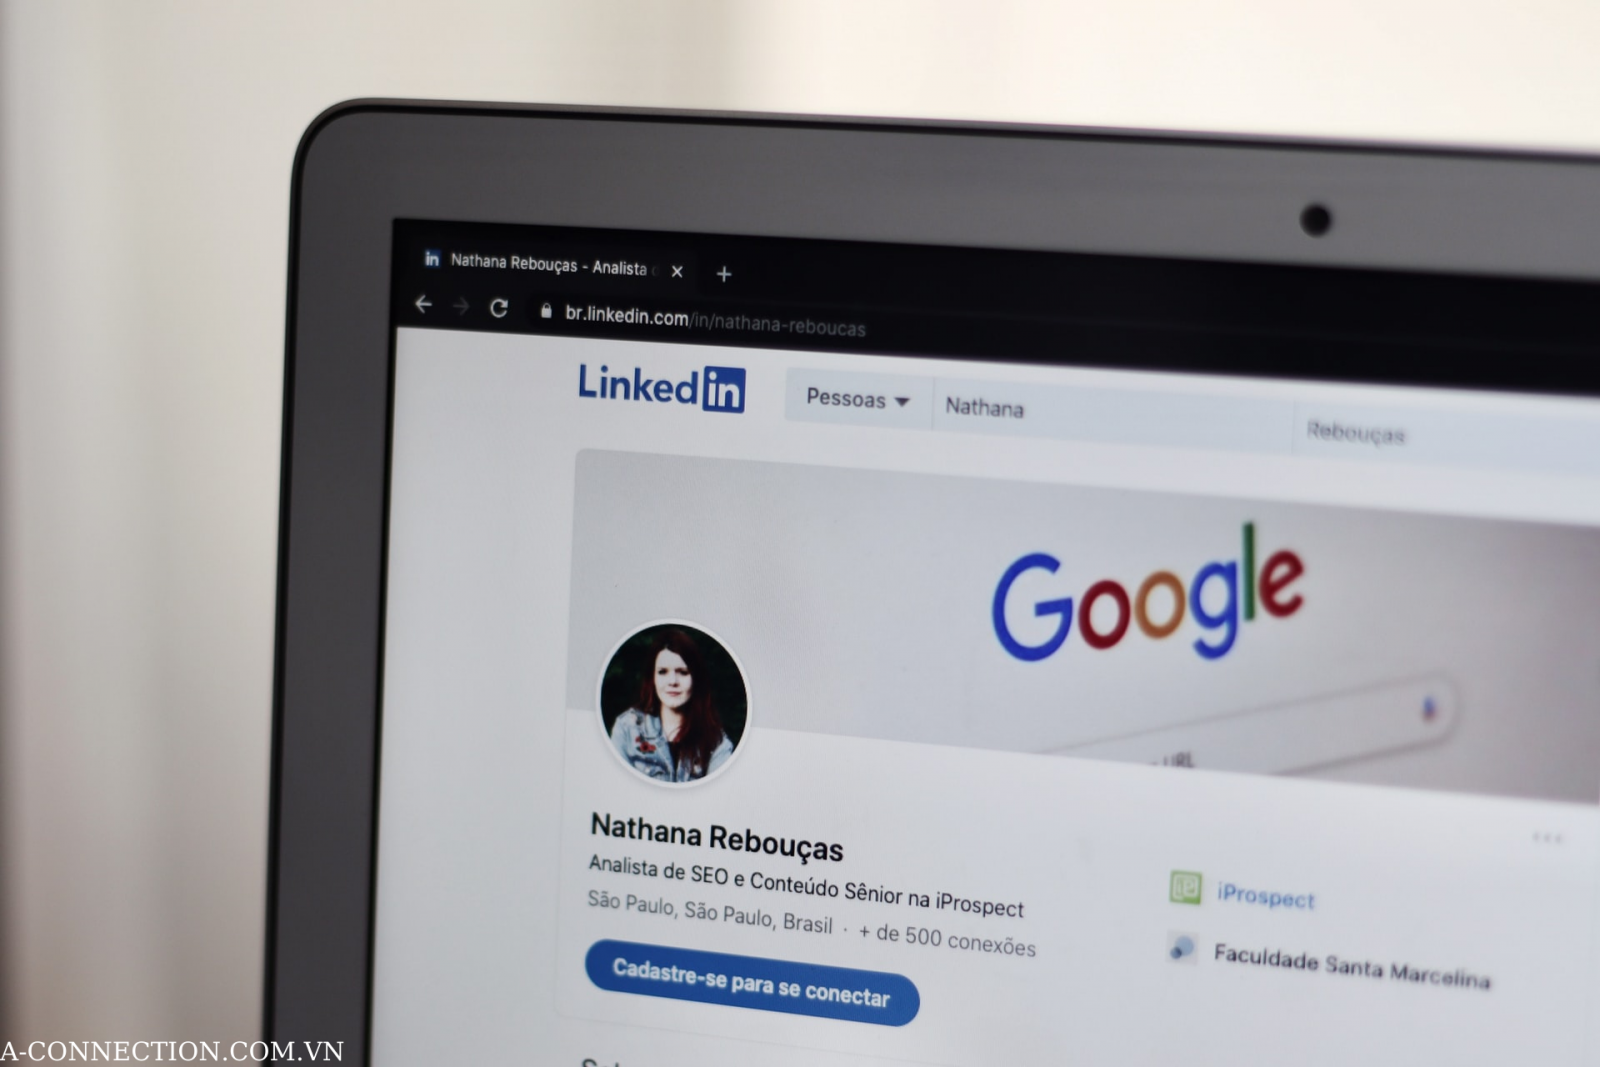 Cách giúp hồ sơ Linkedlin lọt vào mắt nhà tuyển dụng A-CONNECTION.COM.VN